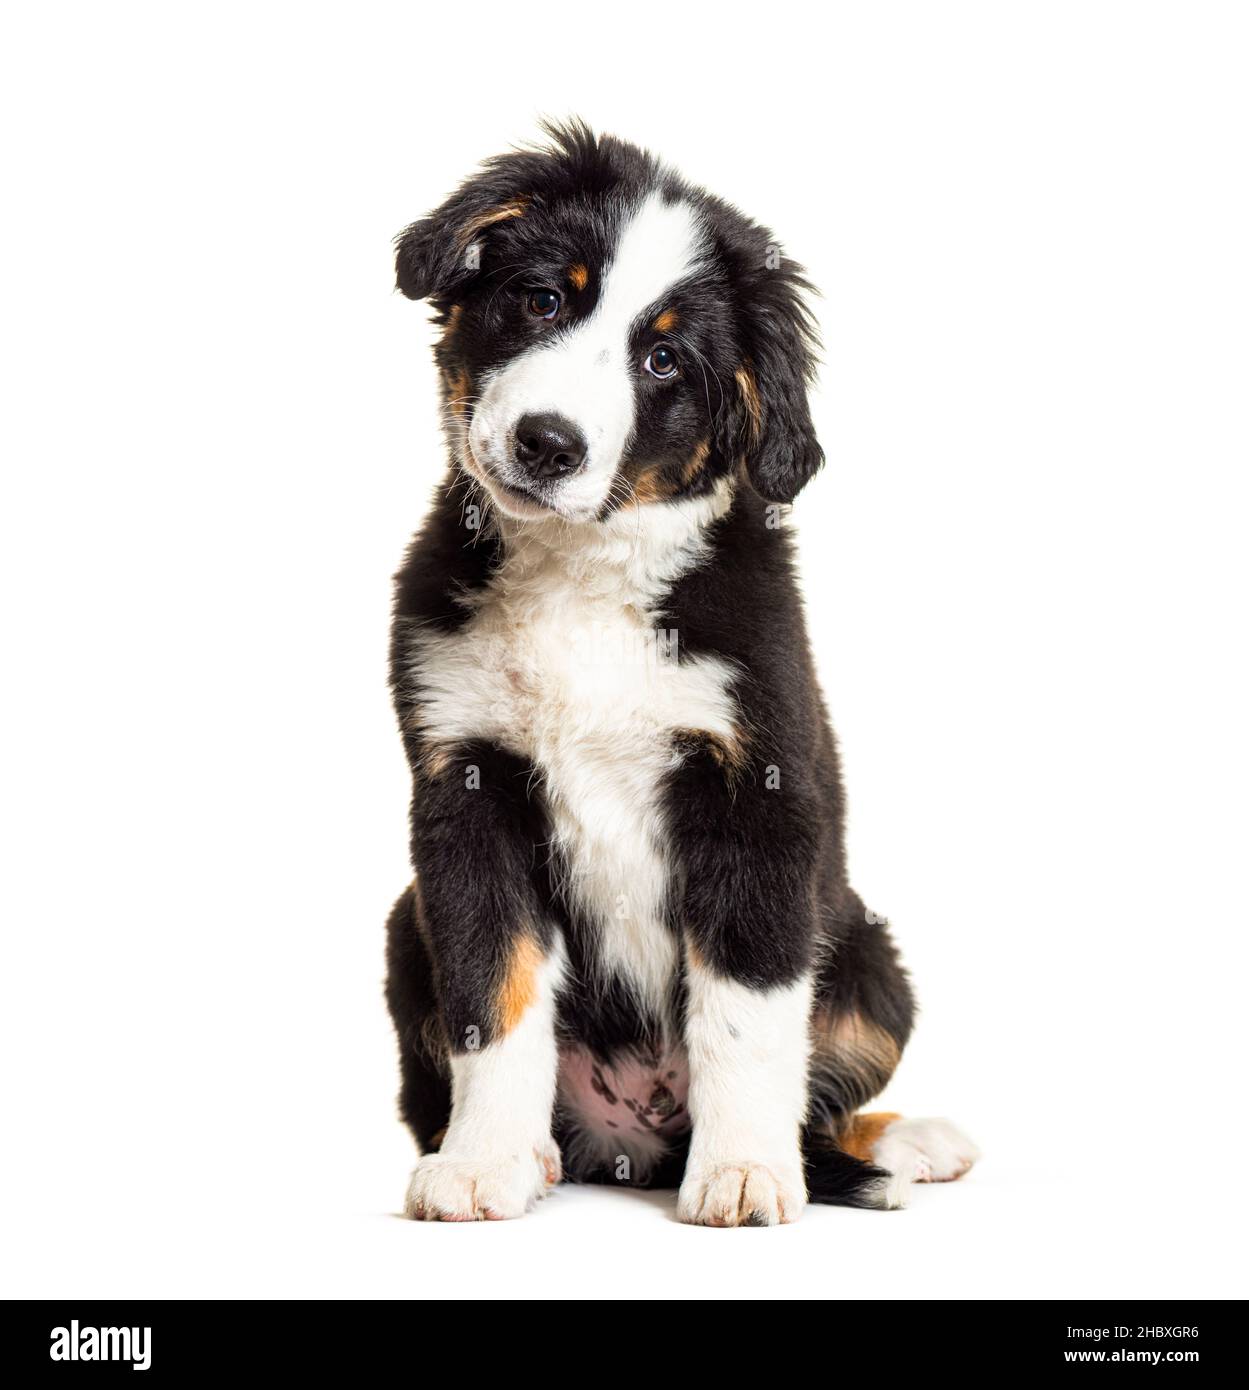 Welpe Bordernese Hund. Mixedbreed Border Collie und Berner Sennenhund; drei Monate alt Stockfoto